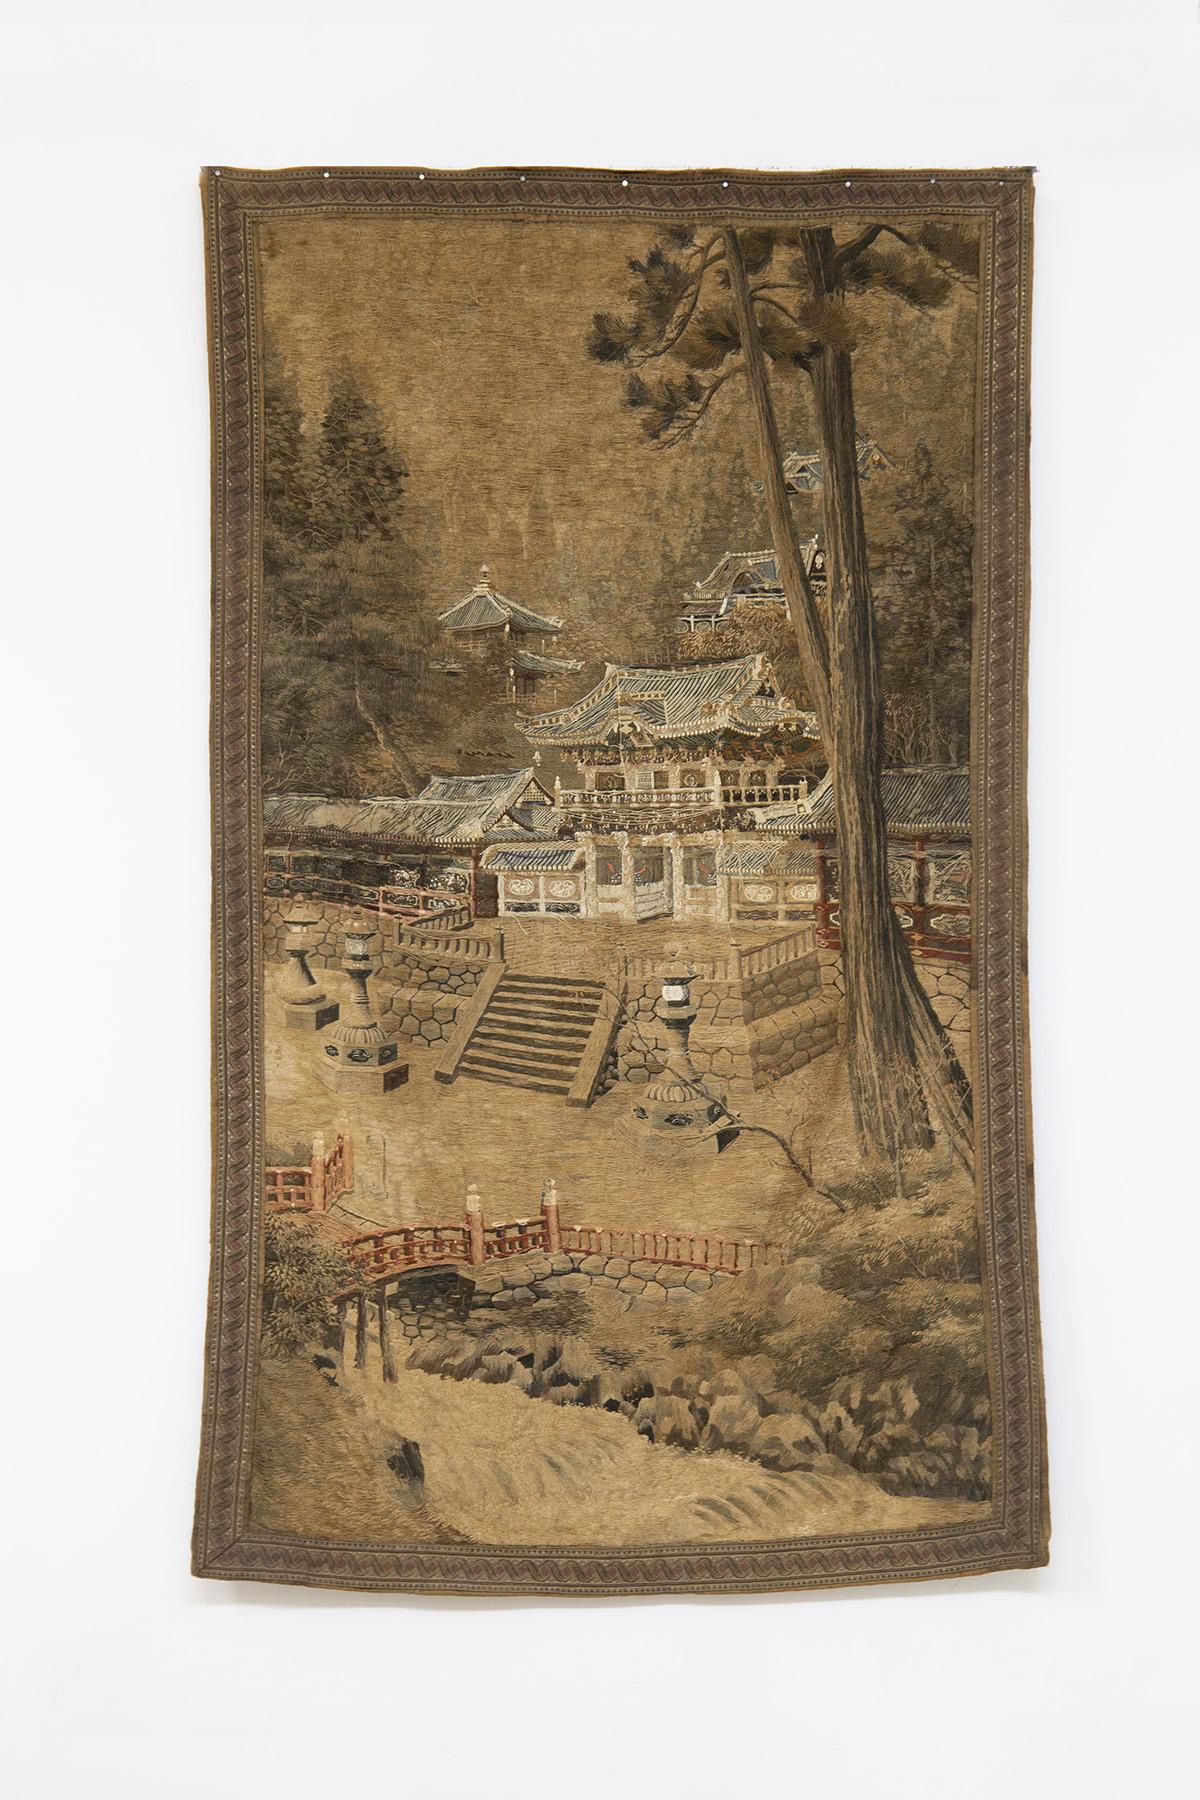 Magnifique et très rare tapisserie japonaise réalisée dans les années 1900, en soie et coton tissés, d'une finesse absolue.
La tapisserie est développée en longueur et en largeur. Il a une forme rectangulaire, agrémentée d'un cadre cousu avec un